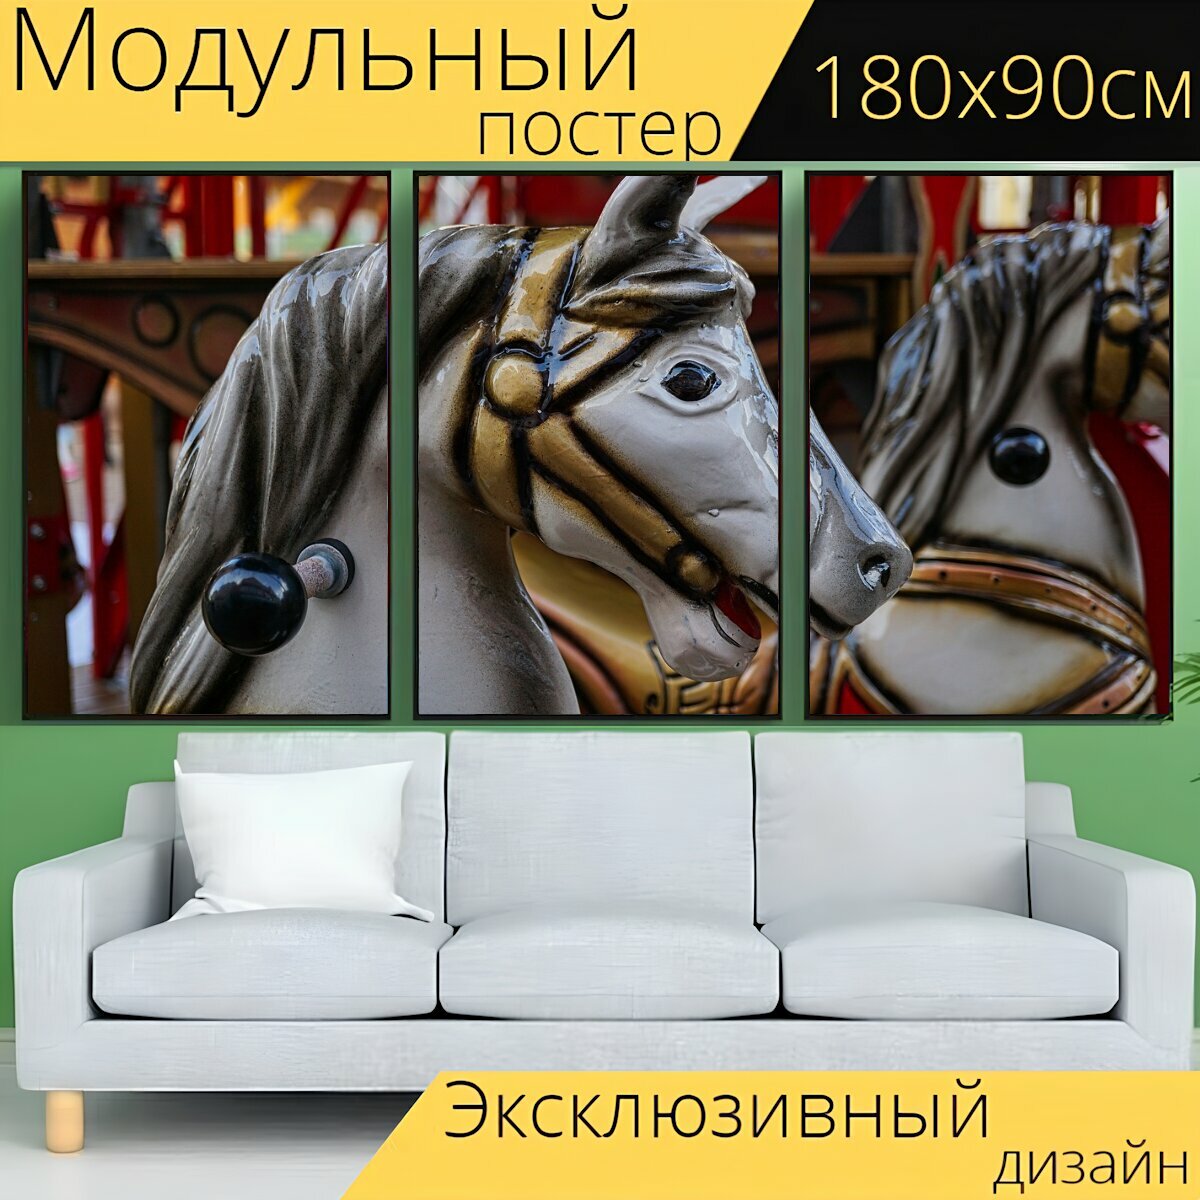 Модульный постер "Карусель, детская карусель, карусель лошадь" 180 x 90 см. для интерьера